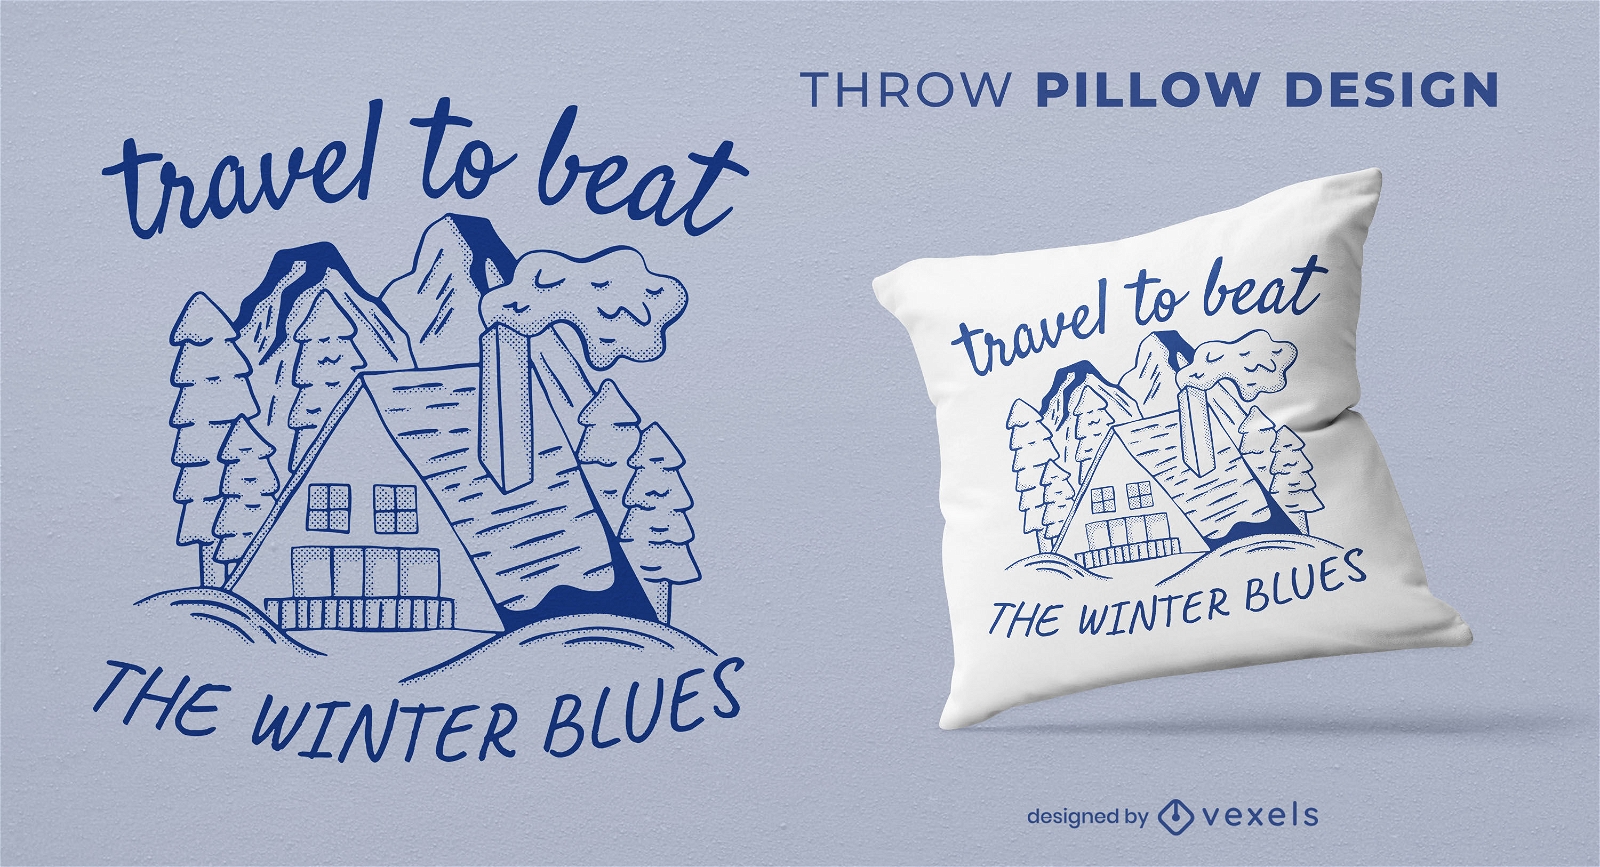 Viaje para vencer o design de almofadas azuis de inverno